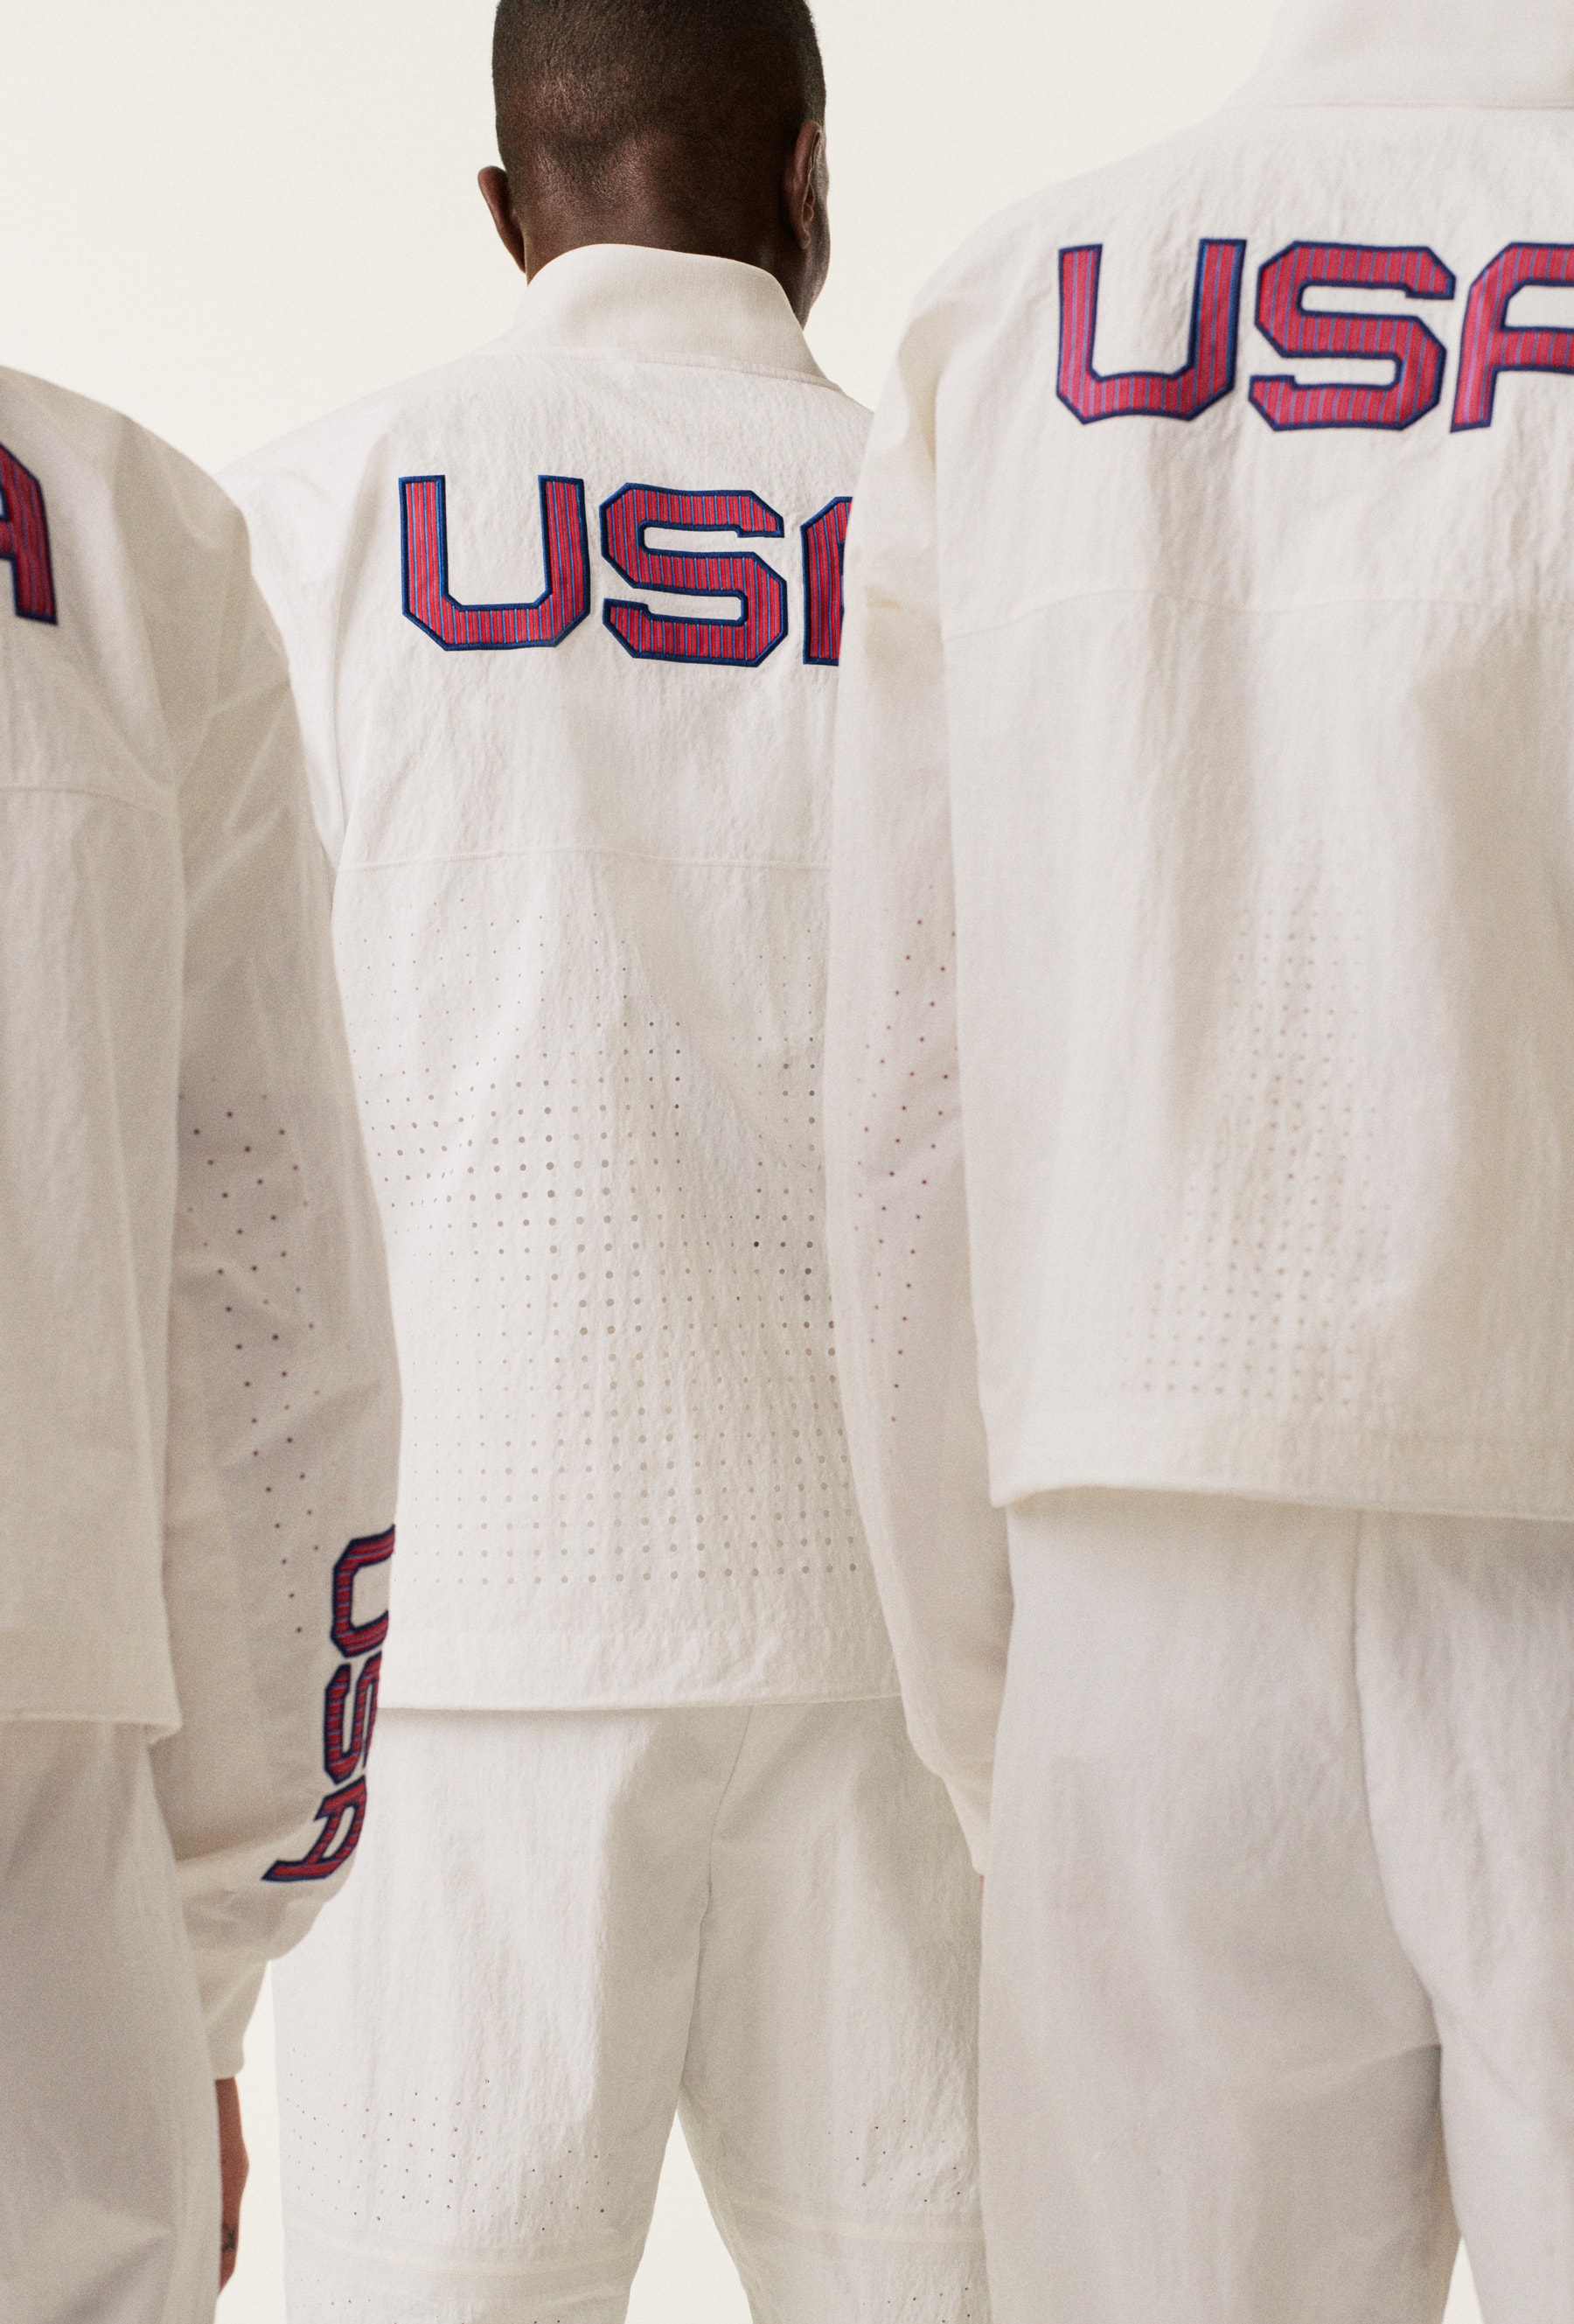 純白戰袍 - Nike 正式揭露 2020 東京奧運美國隊受獎隊服